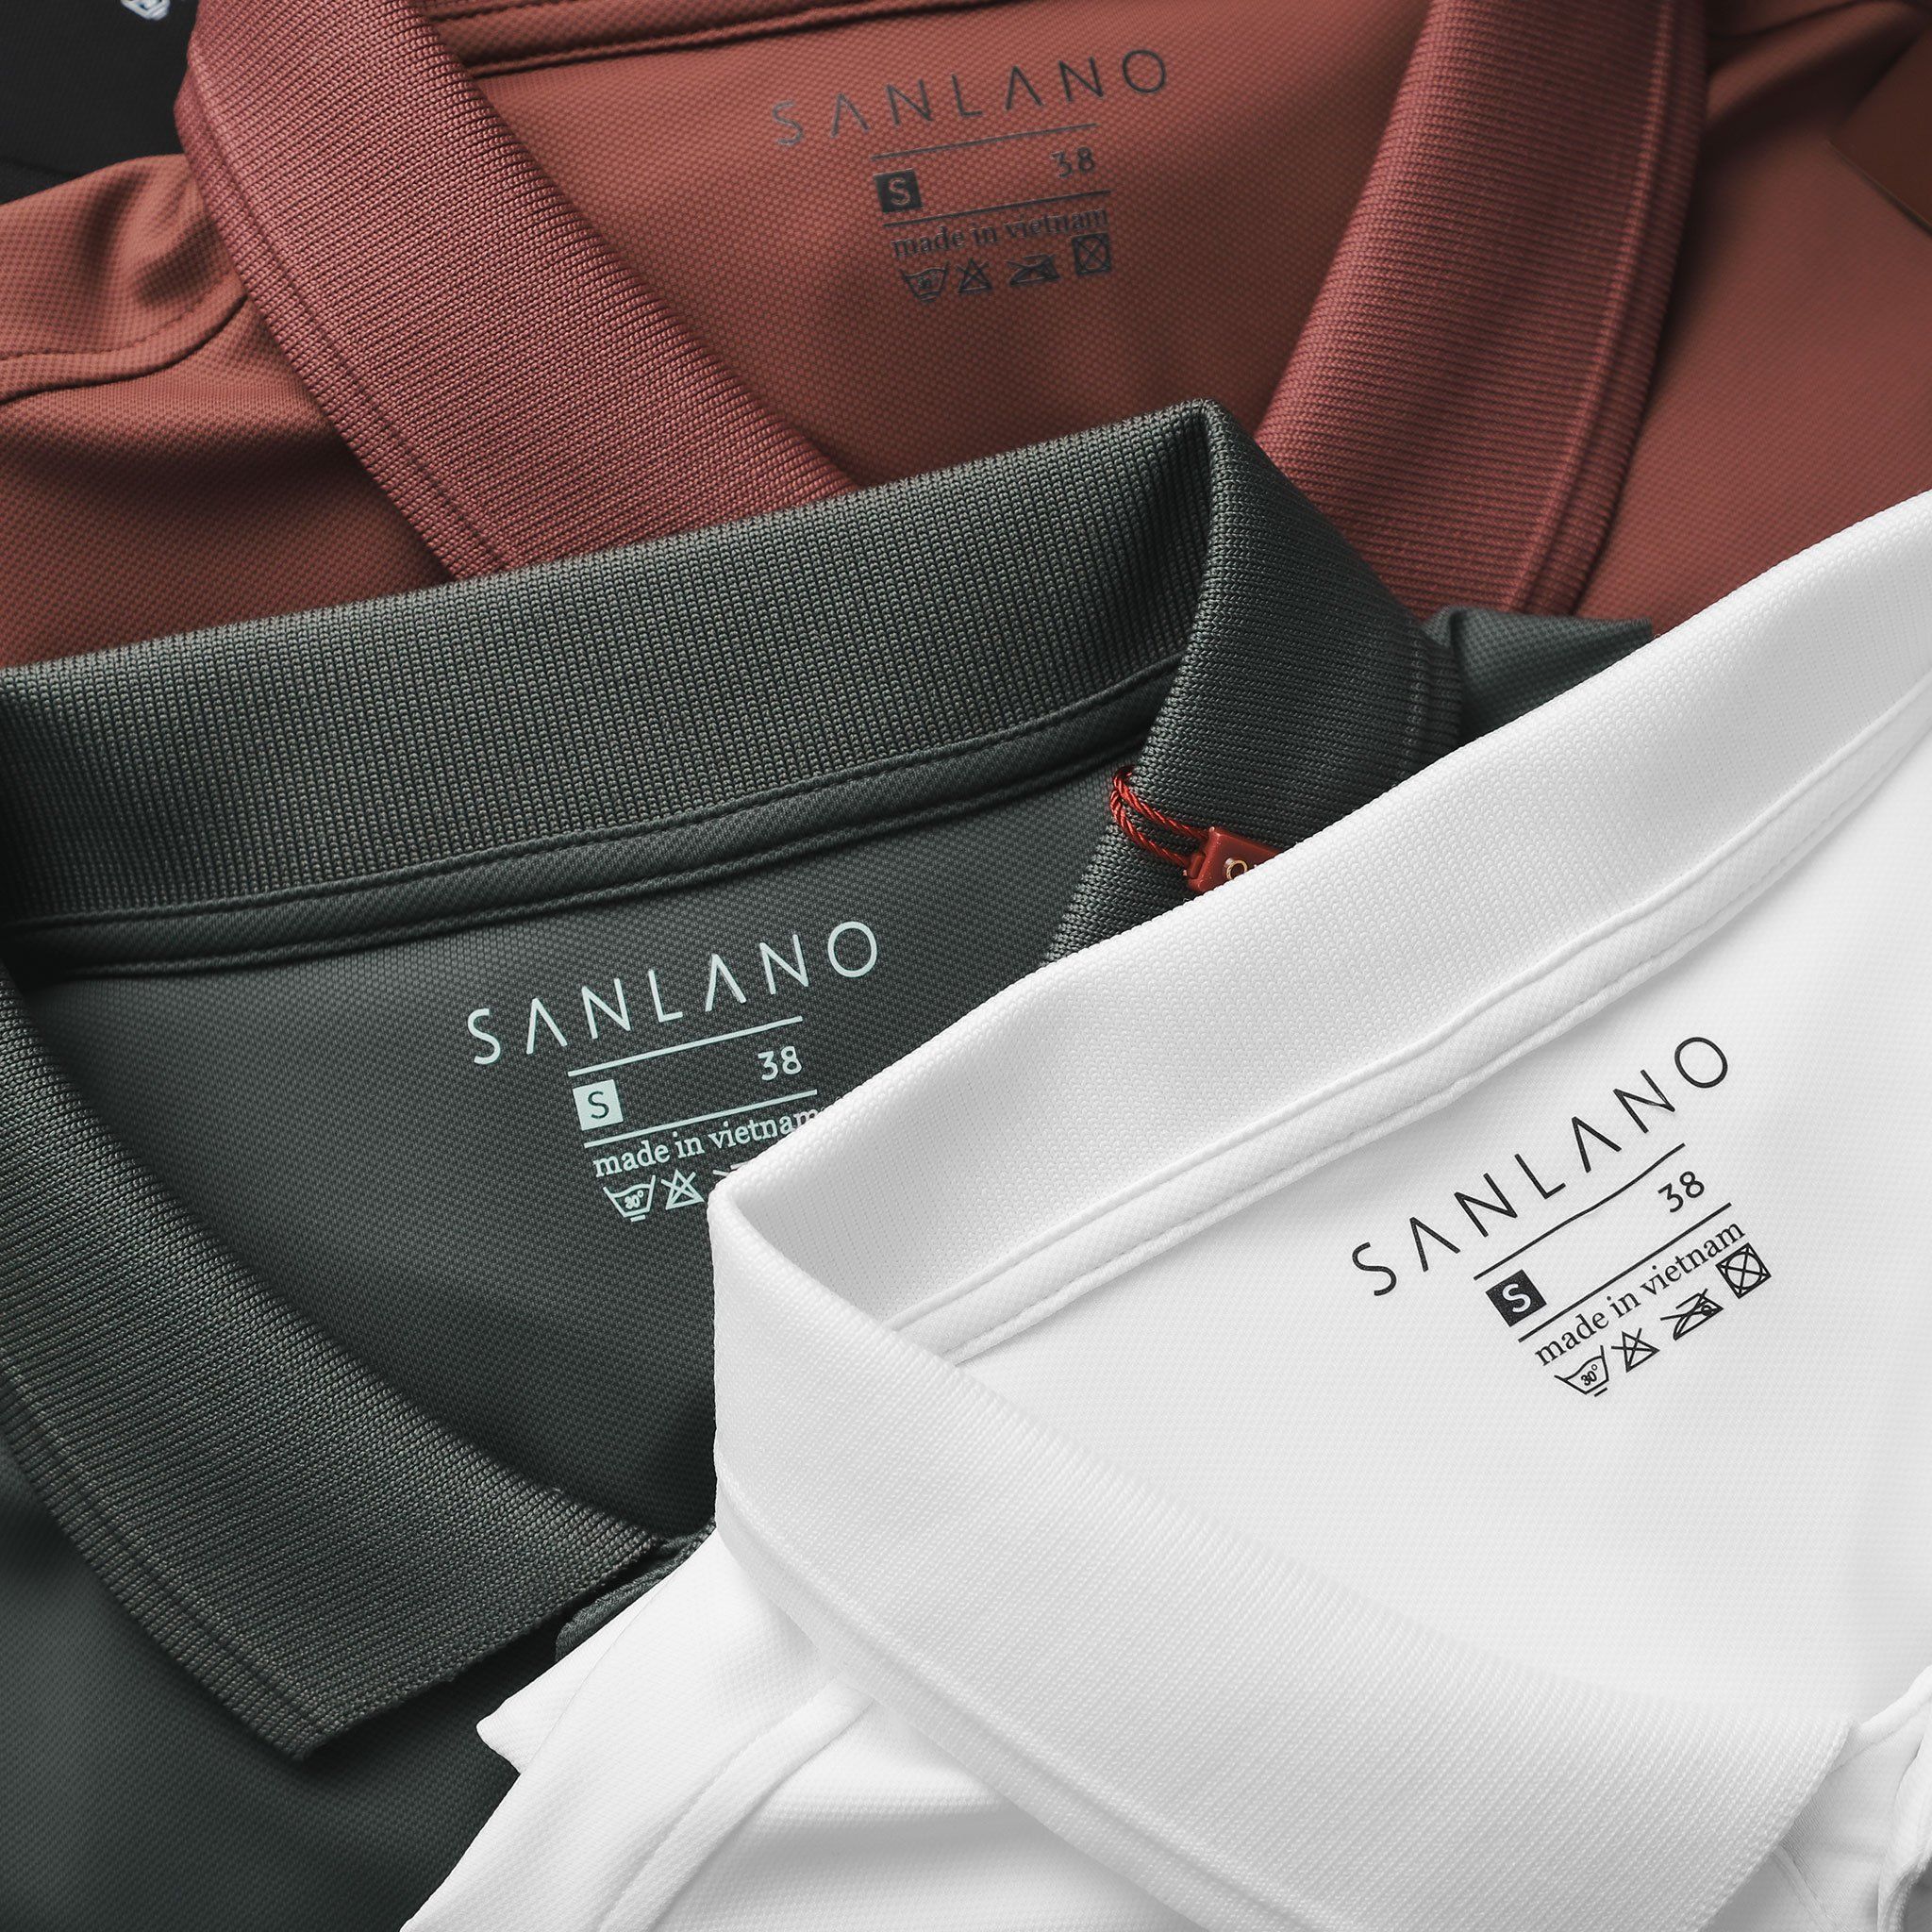  Polo SANLANO Premium Cotton 